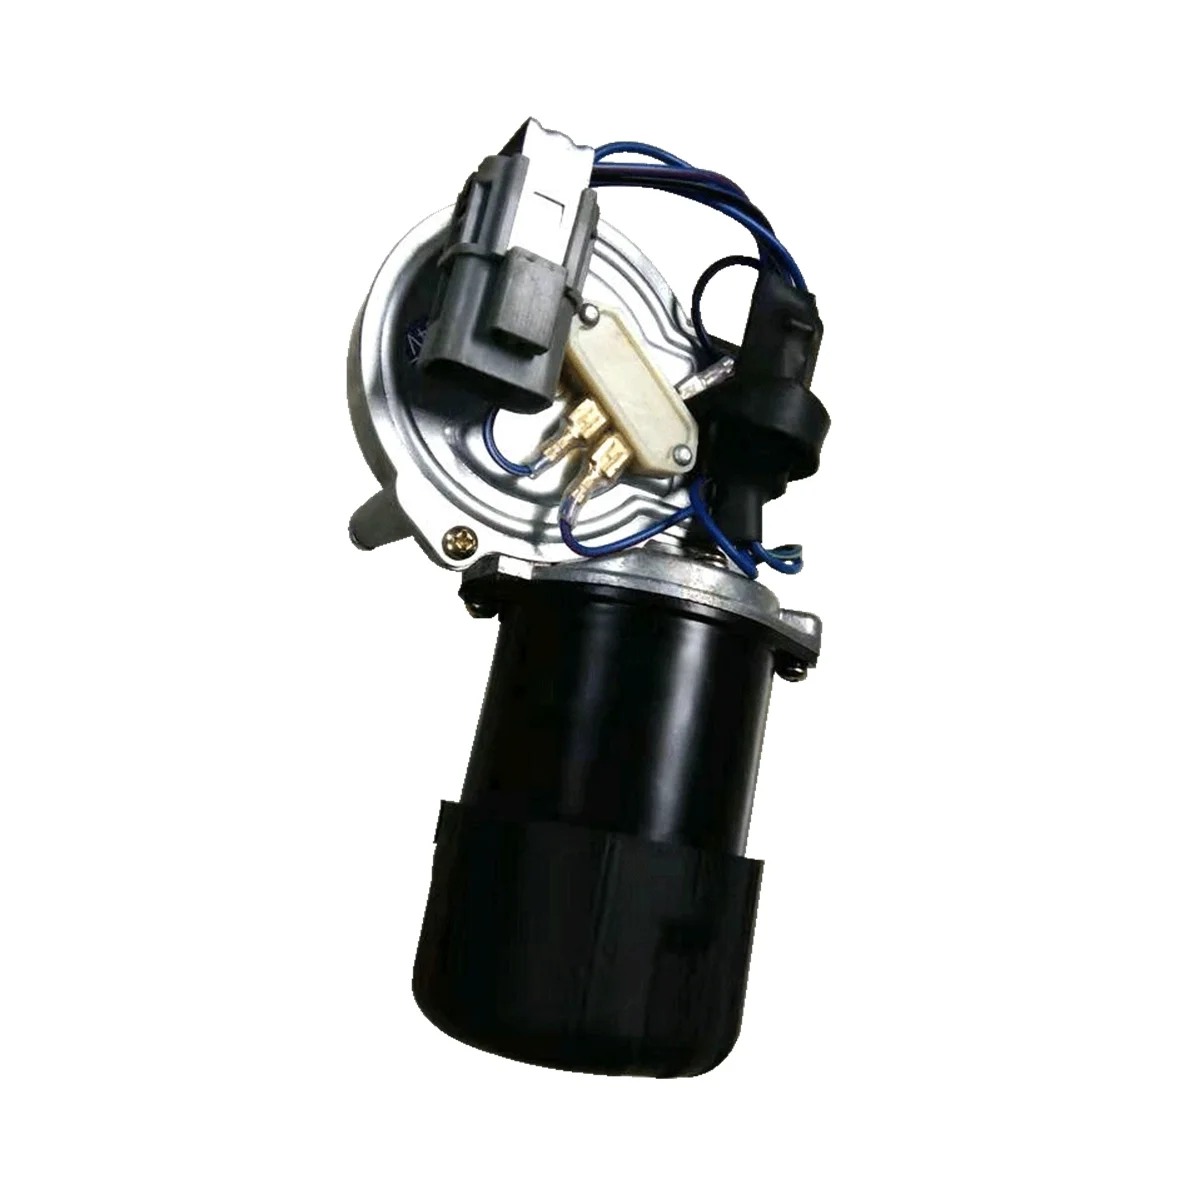 

Мотор стеклоочистителя для Isuzu Mixer Isuzu Pump Trucks, дворники в сборе 1-83311-046-0